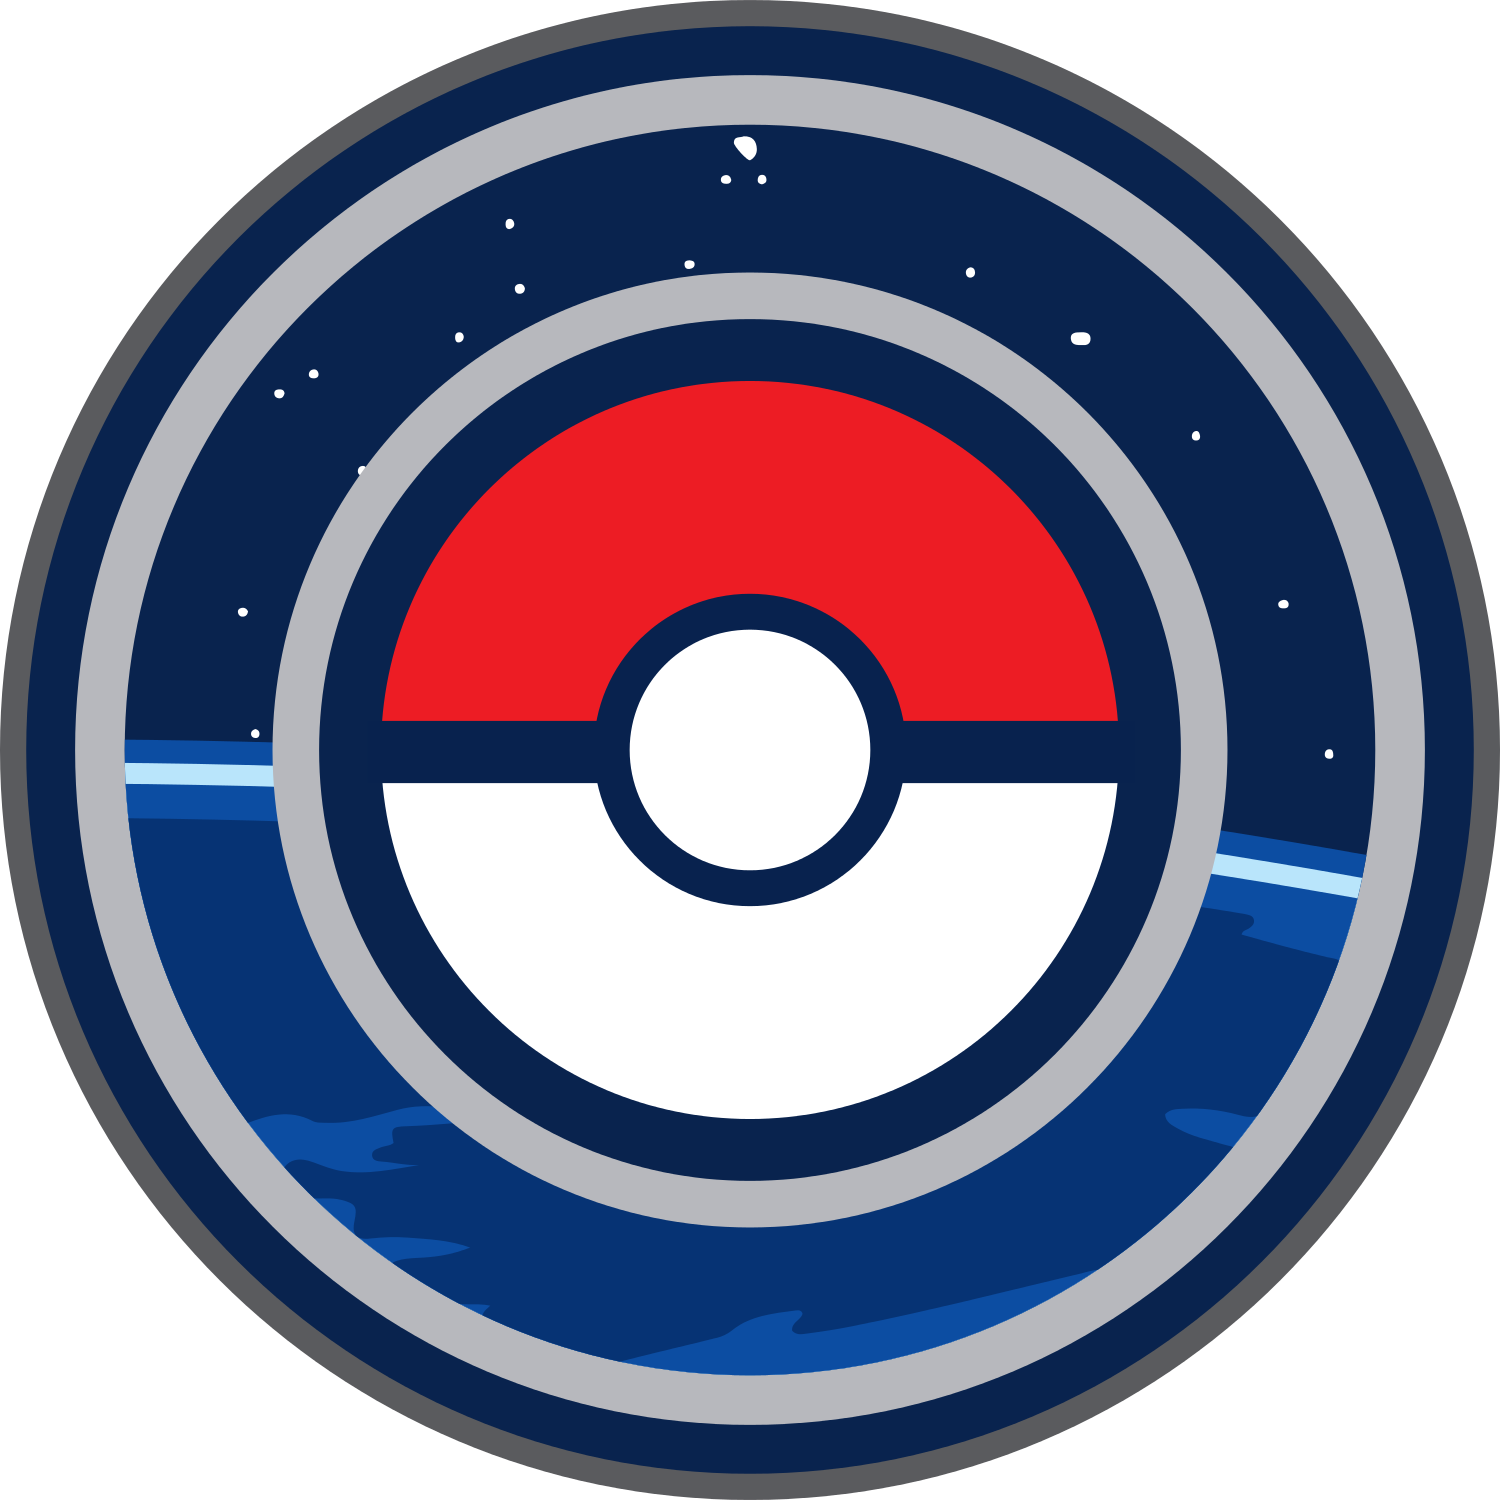 Pokemon Logo Guide to Bellsprout Pokémon 69 Pokemon logo by